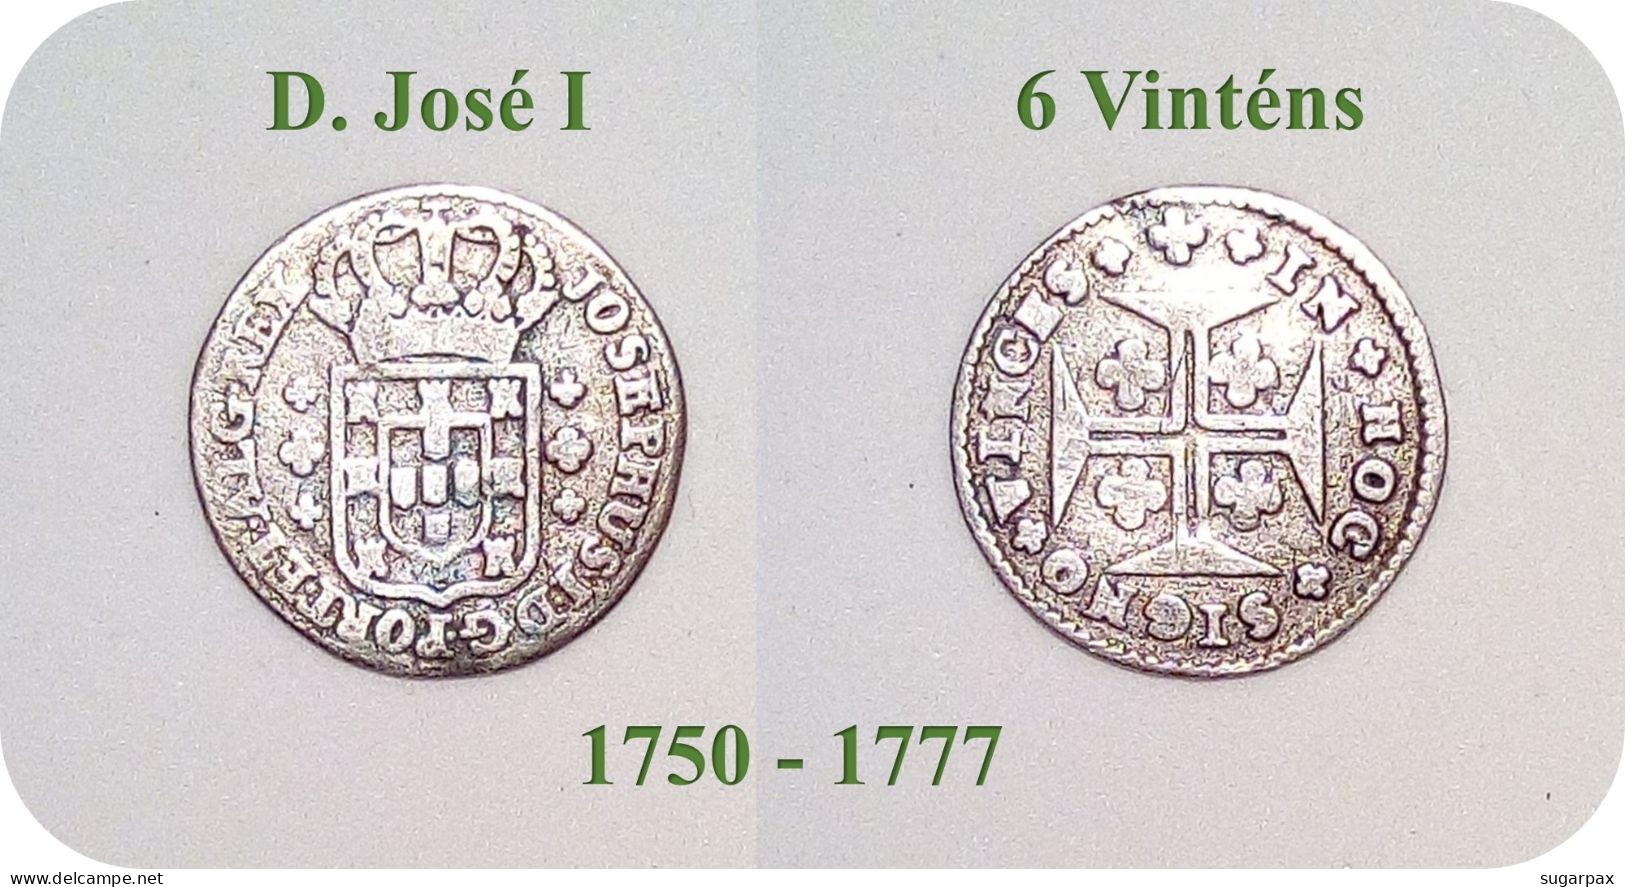 D. José I - 6 Vinténs - N/D ( 1750 - 1777 ) - KM # 239.1 - SILVER ( Ag 916,6 ) - A.G. 25.02 - Monarquia Portugal - Portugal